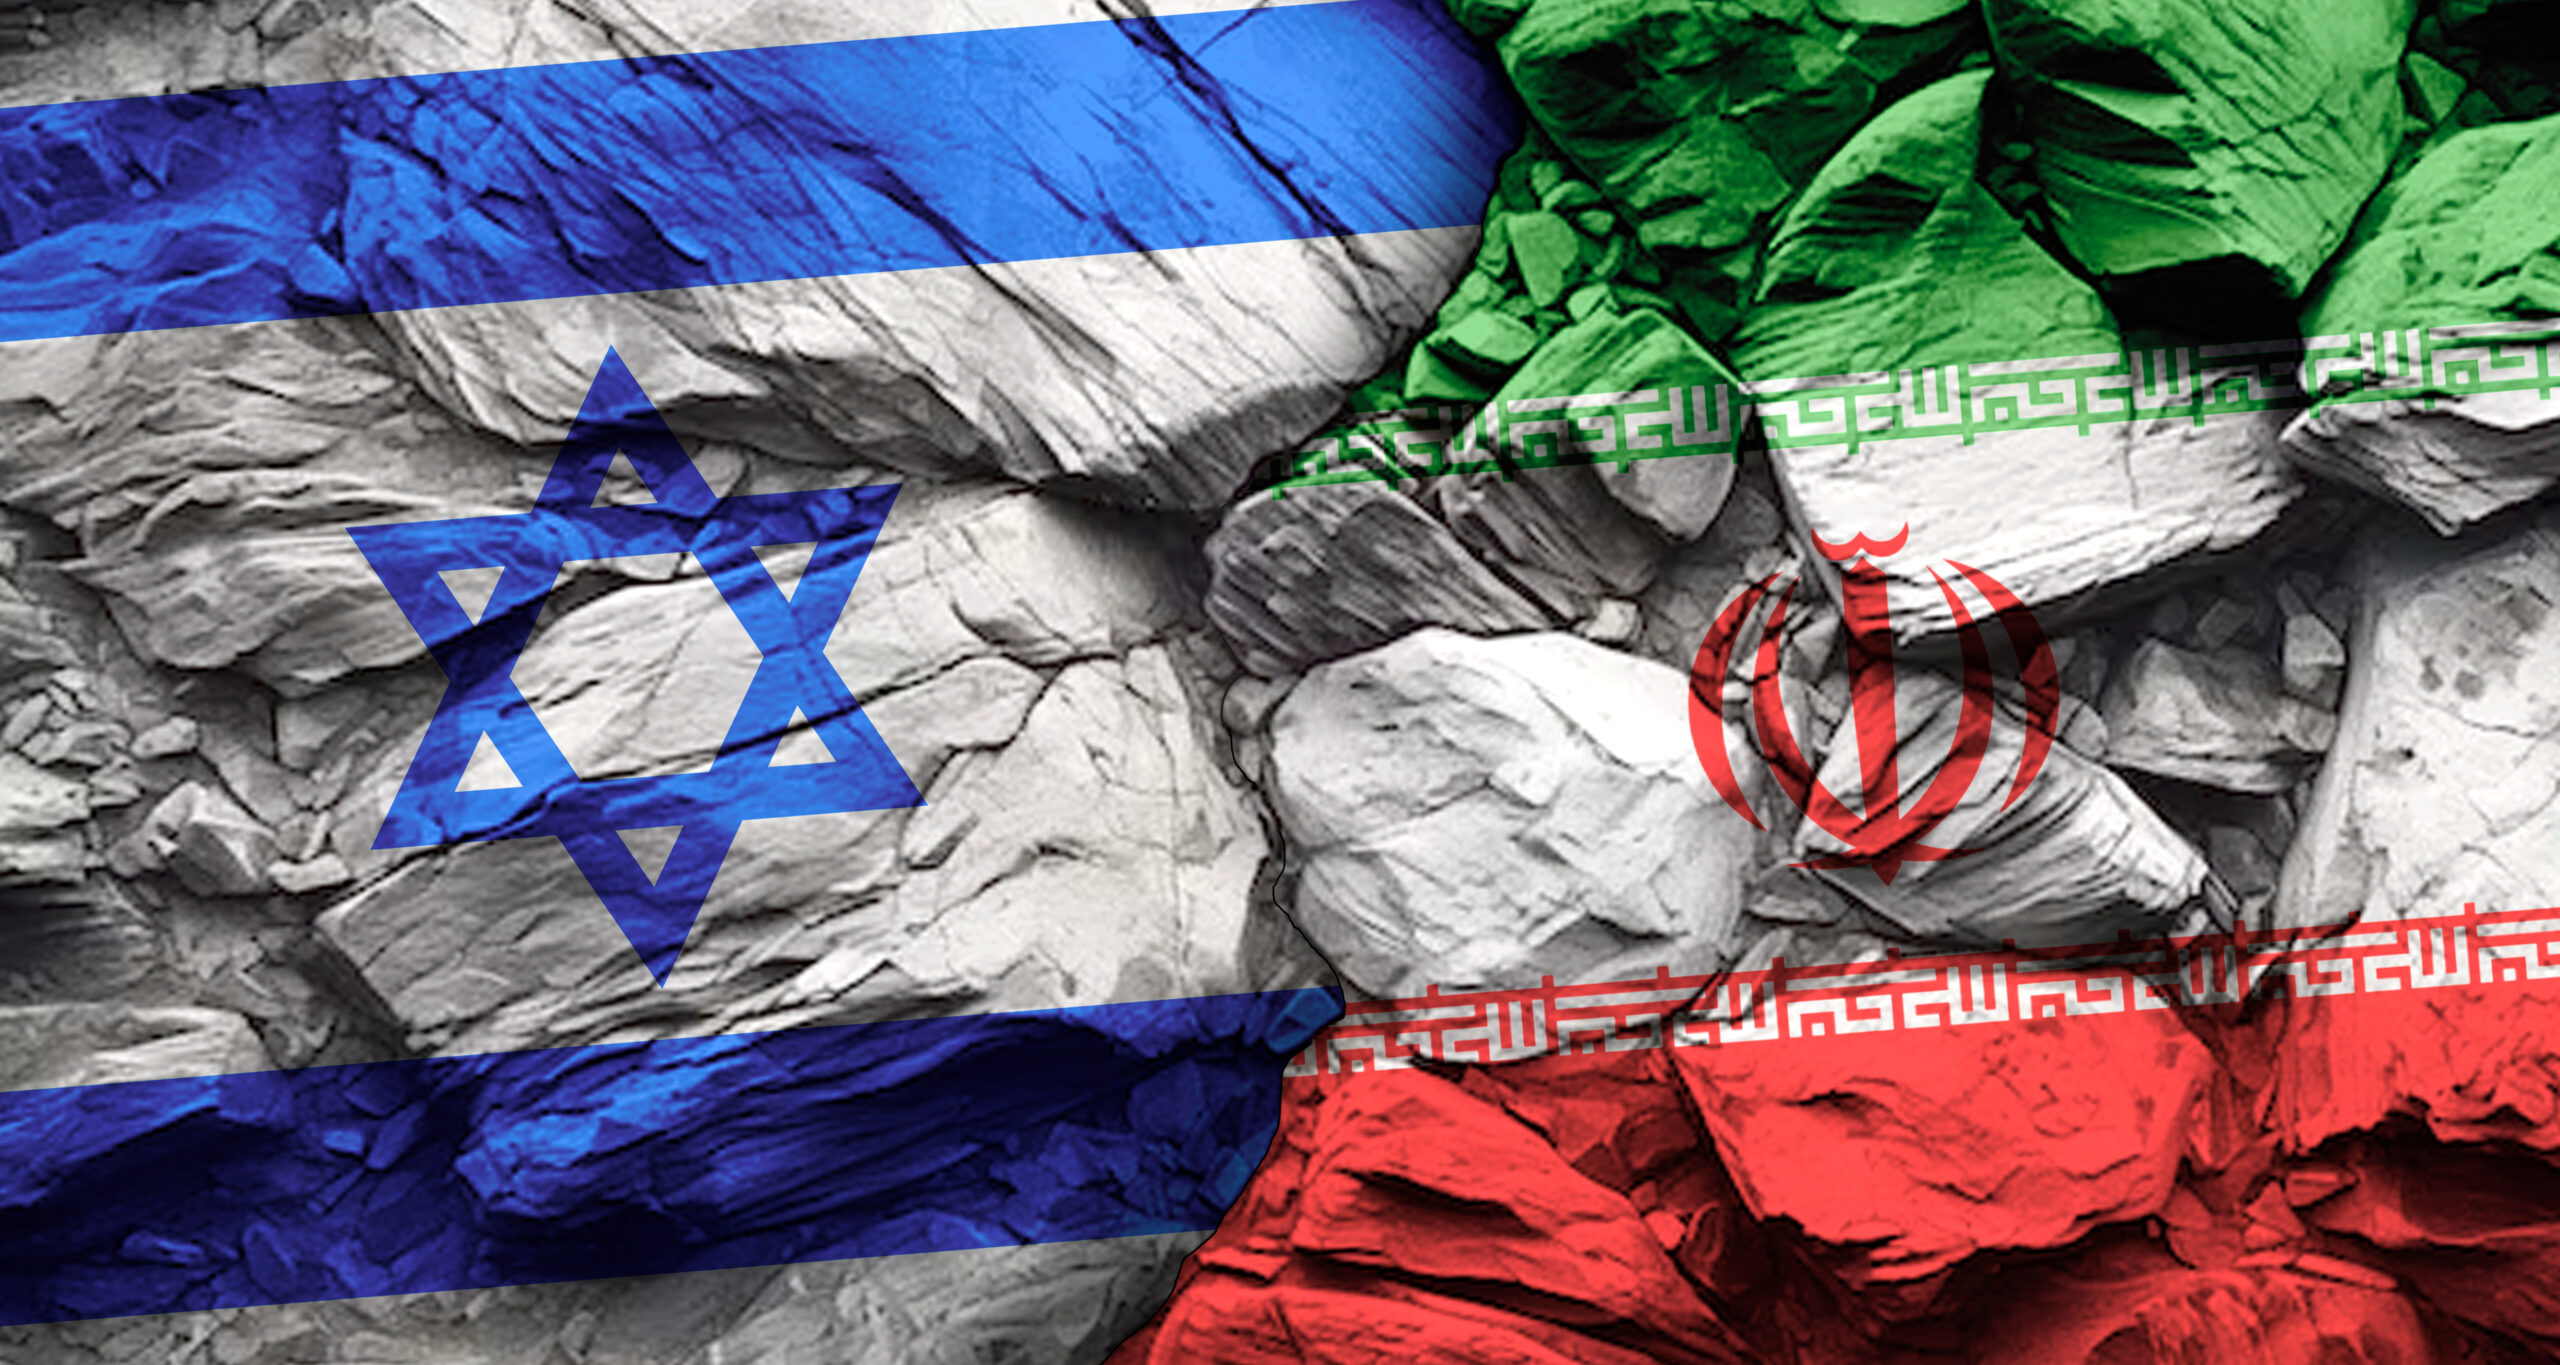 Iran Attacks Israel, Will Israel Retaliate?